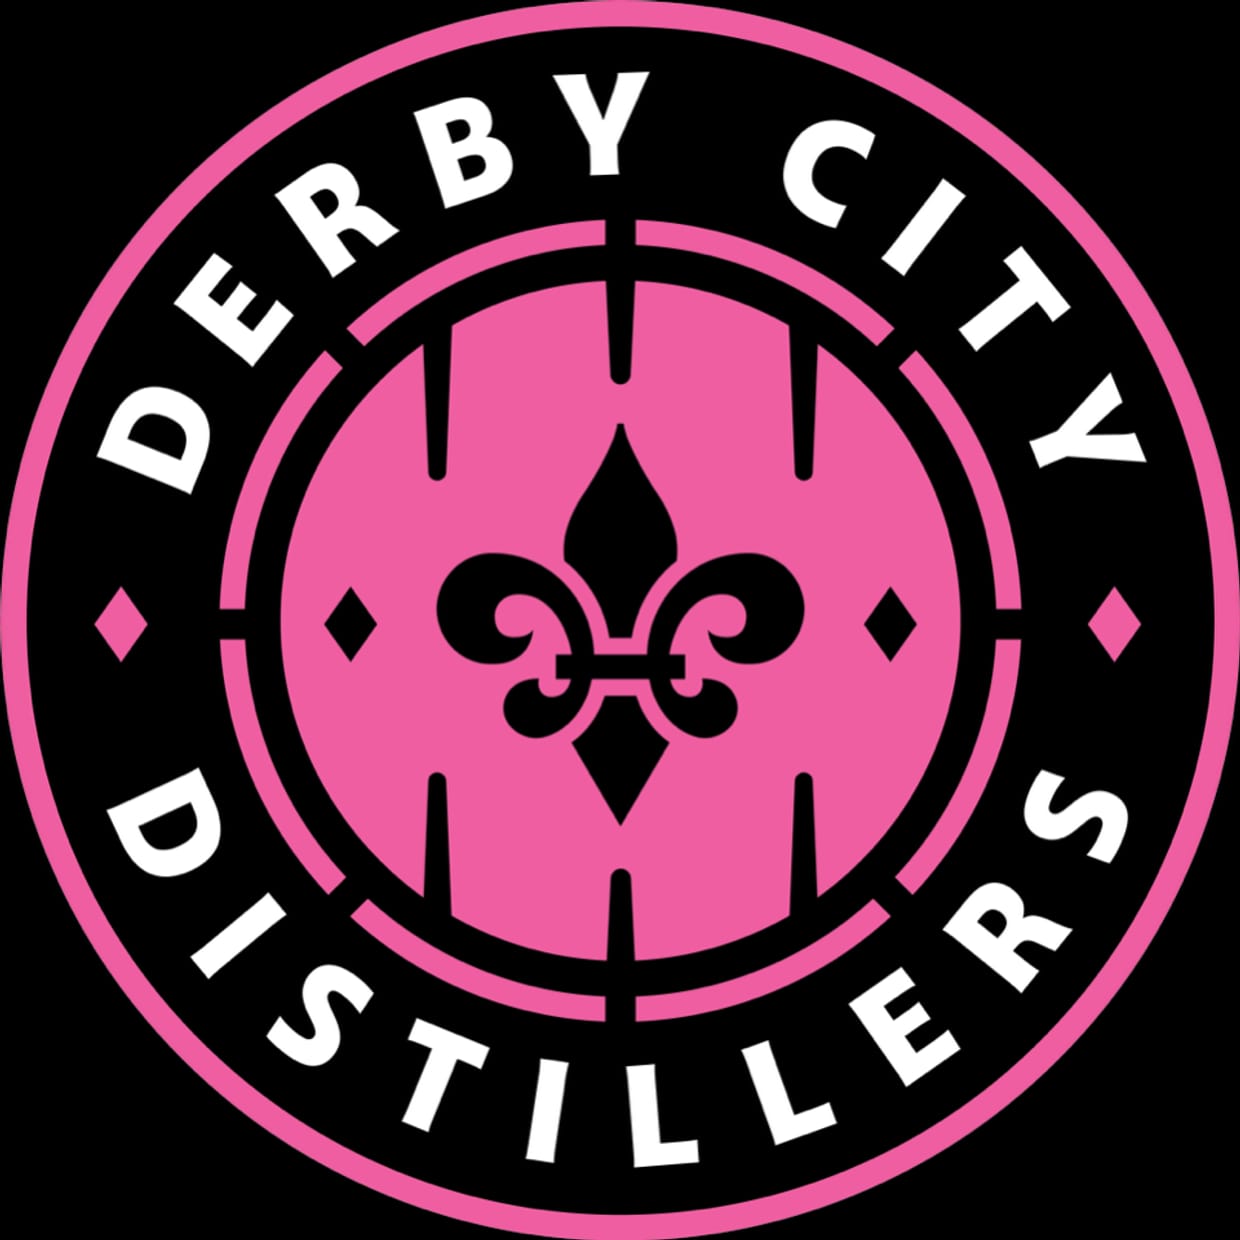 Derby City Distillers v. Huntsville Hurricanes